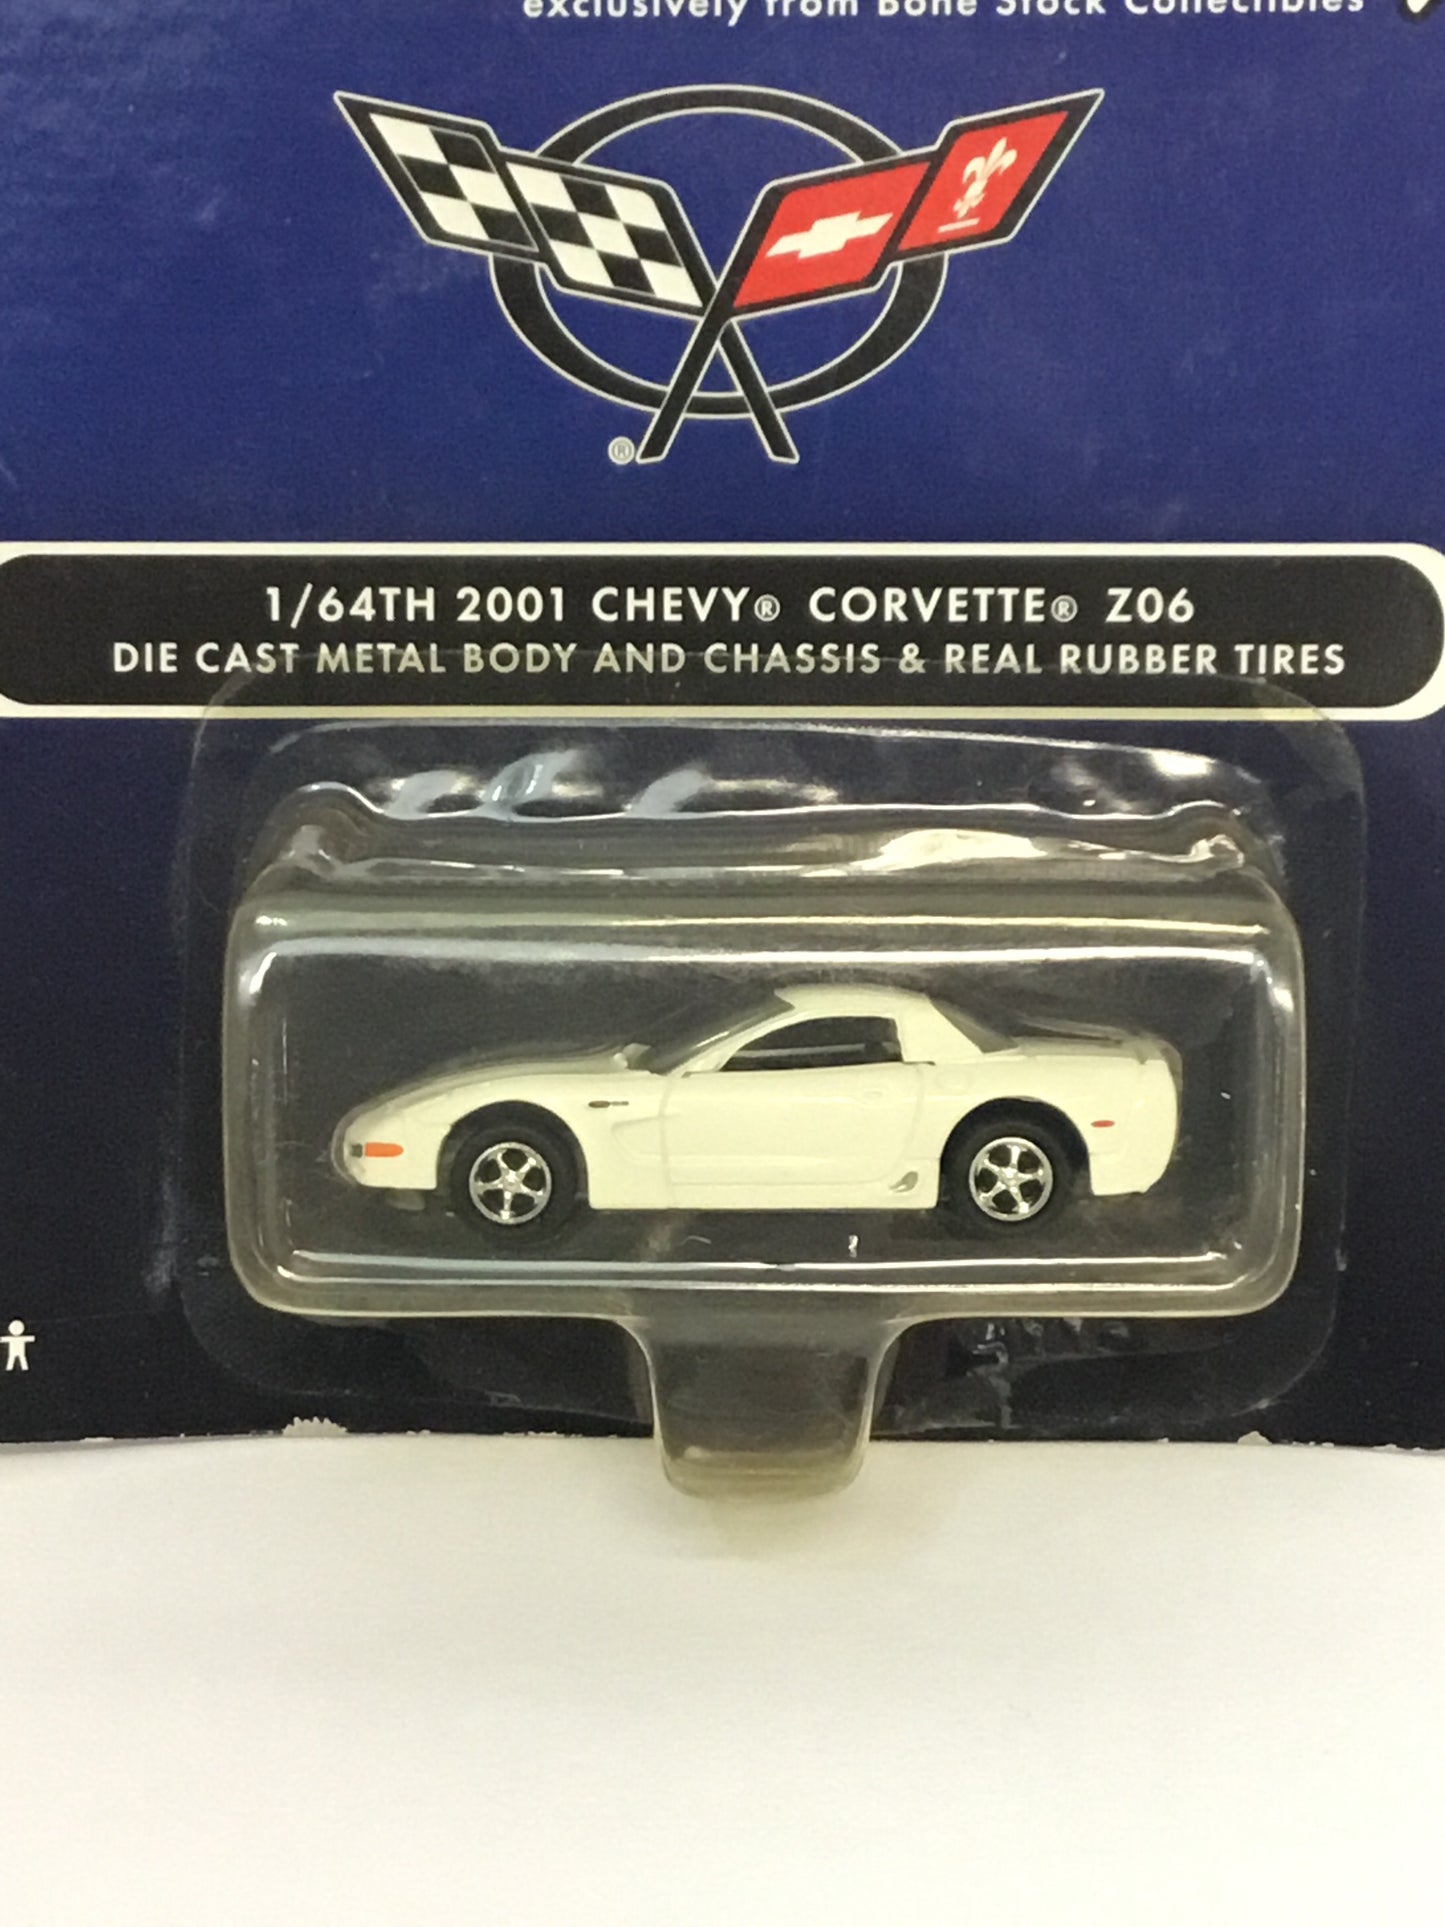 Johnny lightning bone stock racing 2001 Chevy Corvette Z06 (7E1)